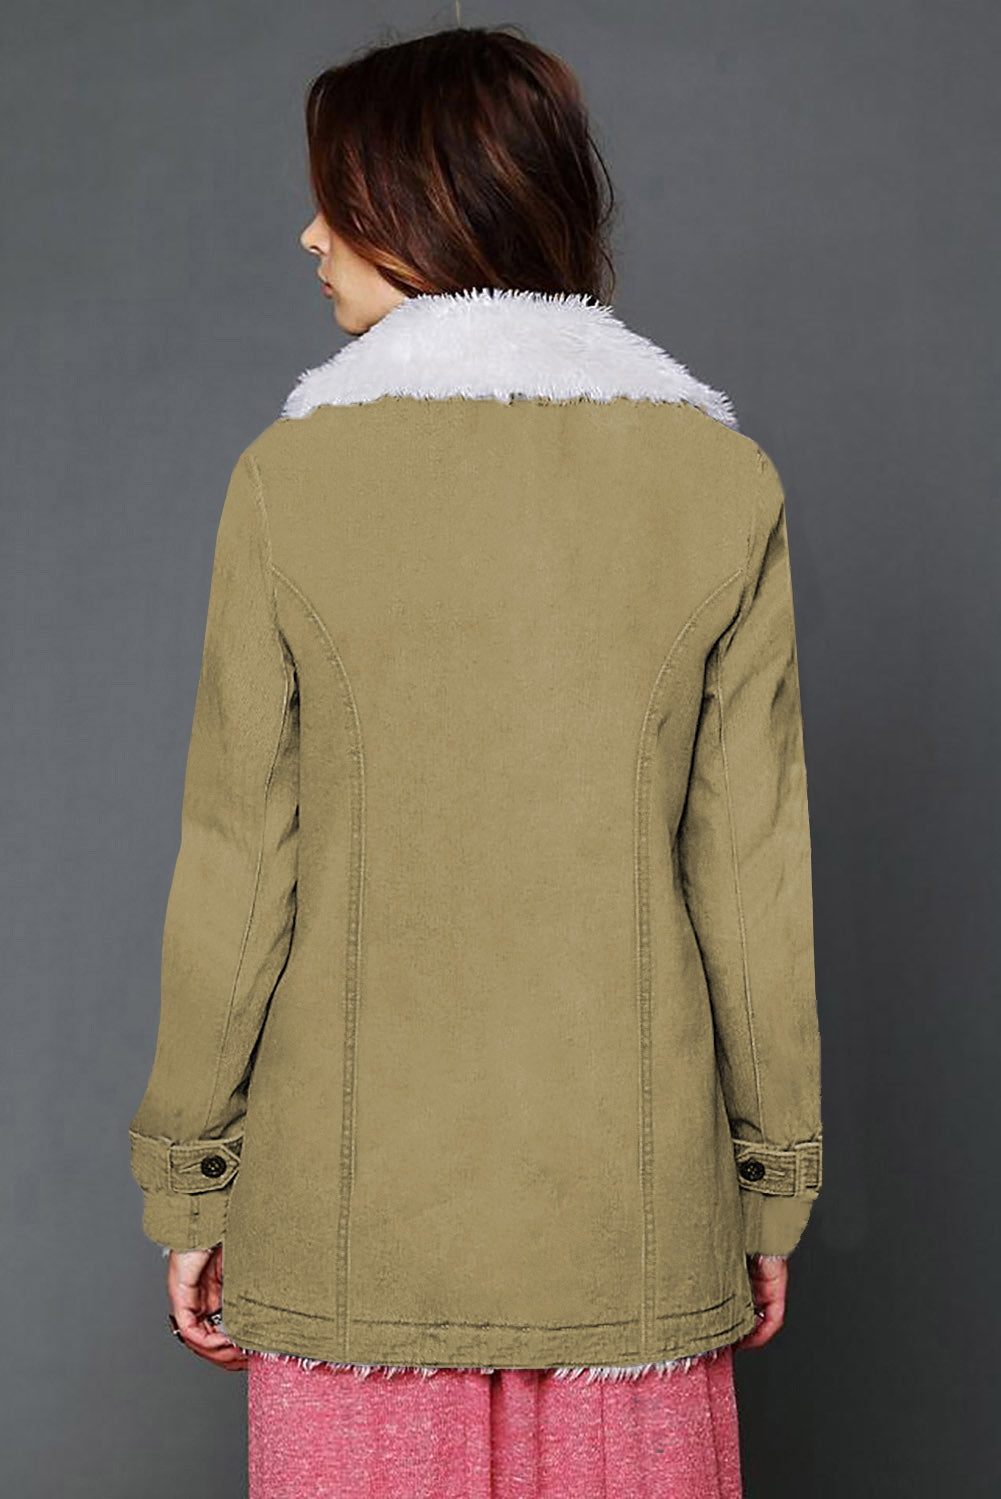 Khaki Lapel Collar Fleece Lined Jacket